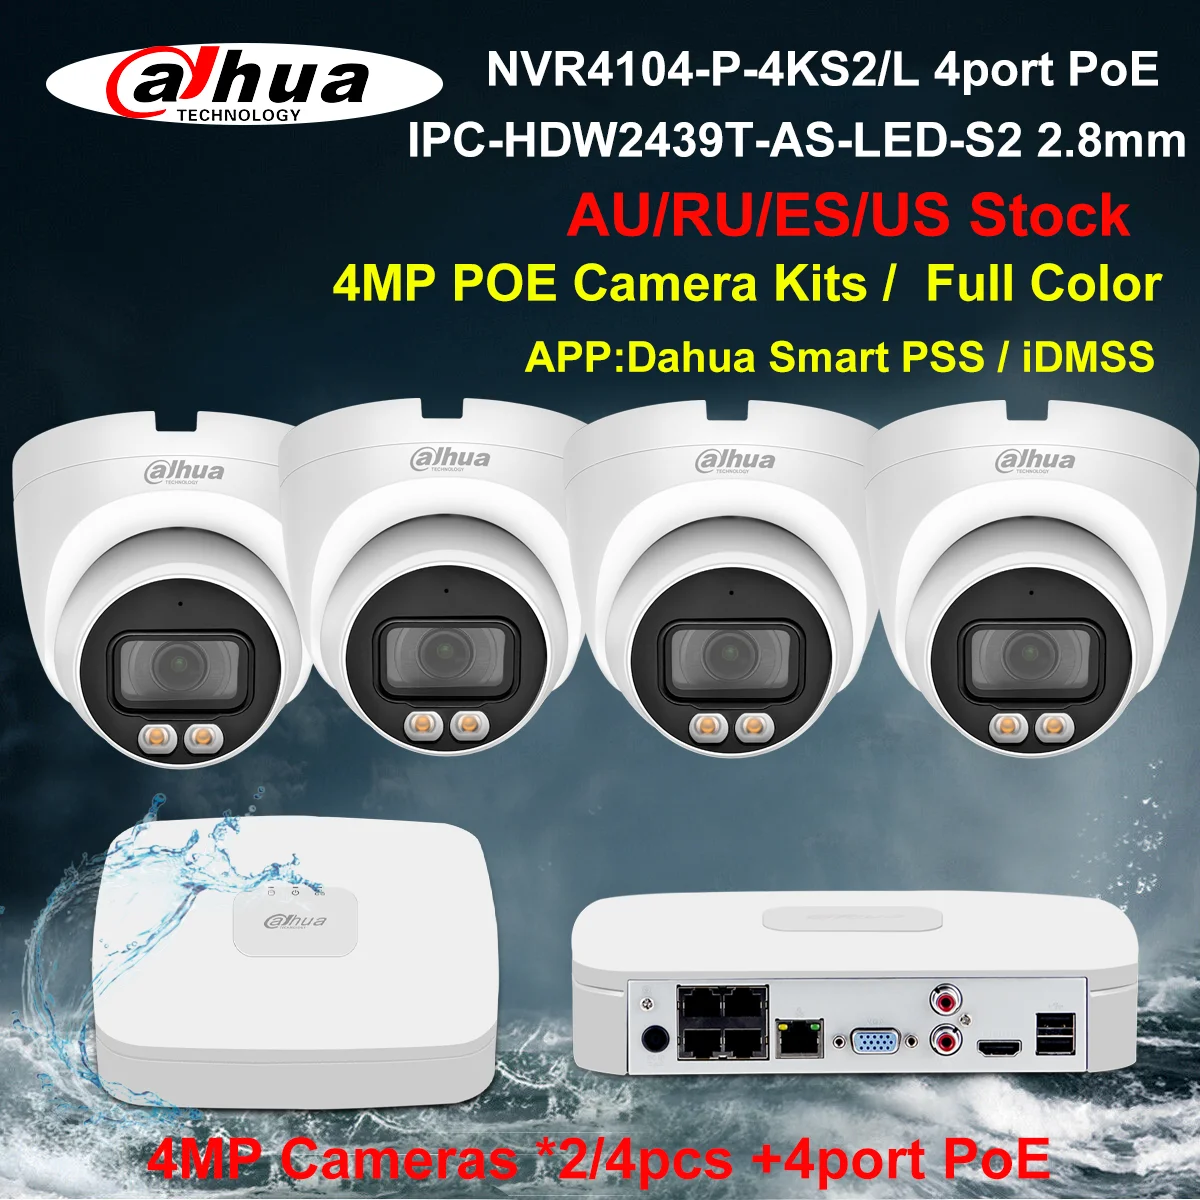 

Dahua Security Camera System 4MP PoE Kits IPC-HDW2439T-AS-LED-S2 NVR4104-P-4KS2/L 4CH NVR Recorder 2/4pcs IP Camera Build in Mic